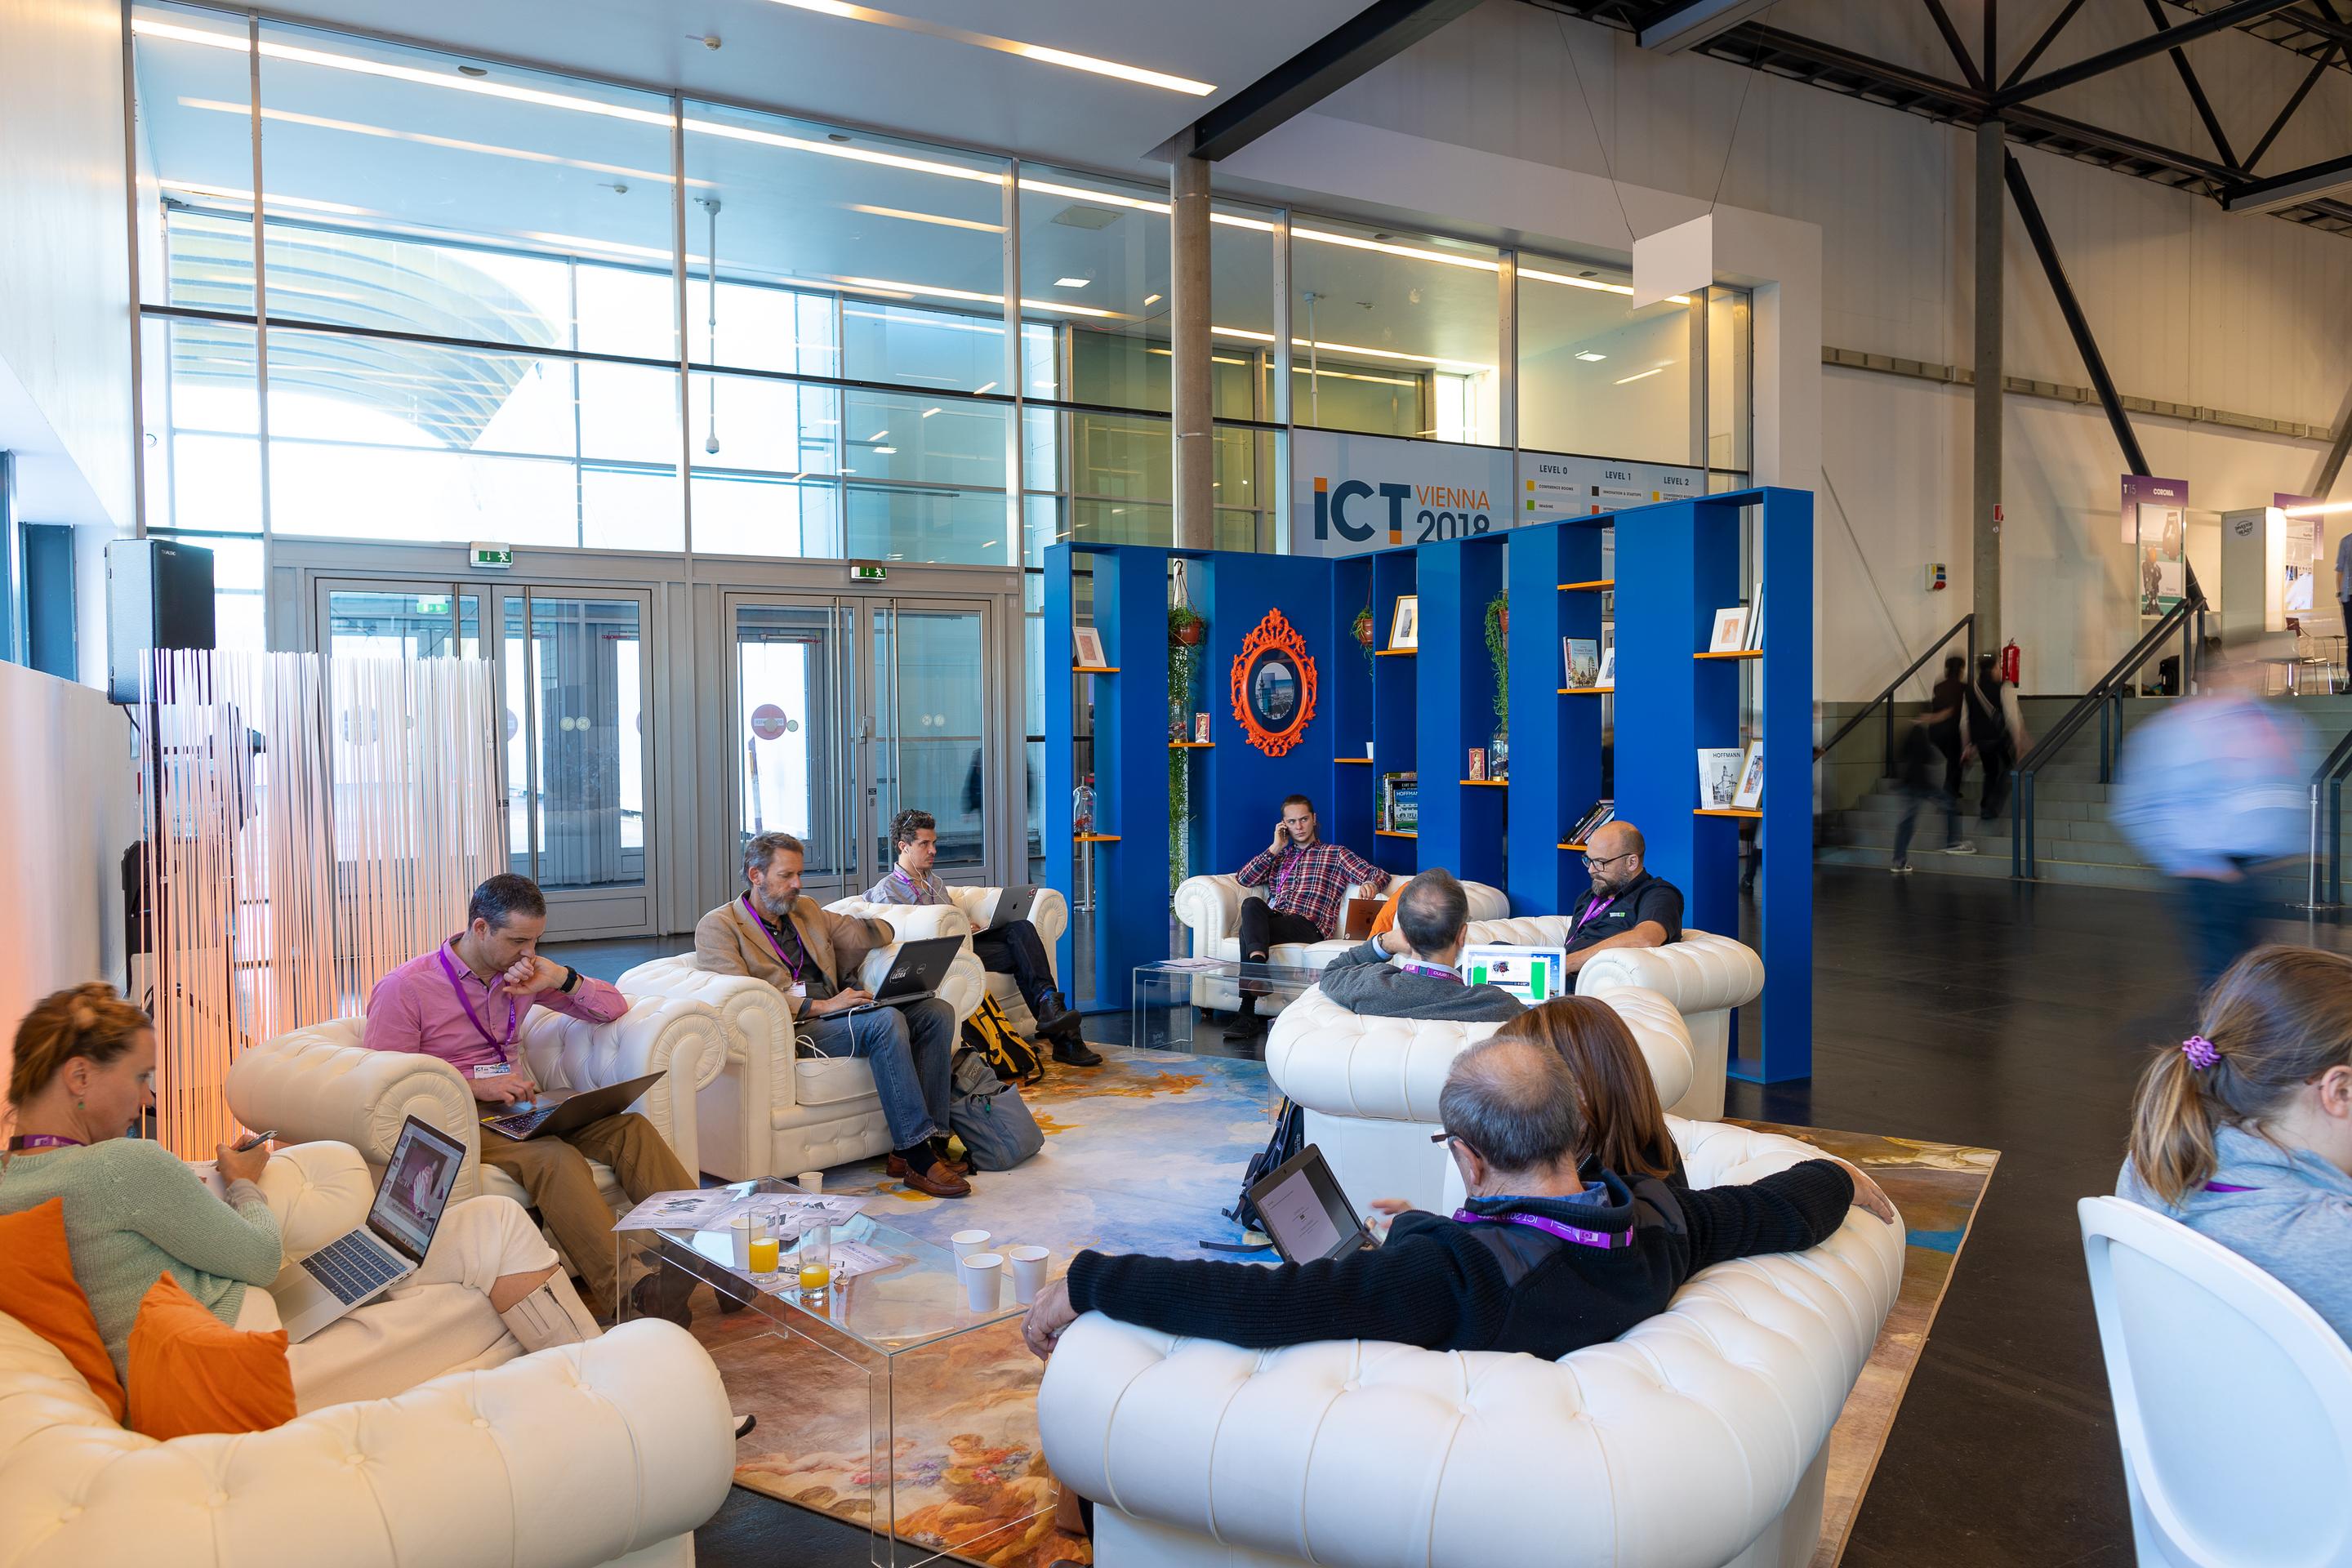 Foto: Menschen in Sitzgruppen bei einem blauen Buchregal in einer Halle